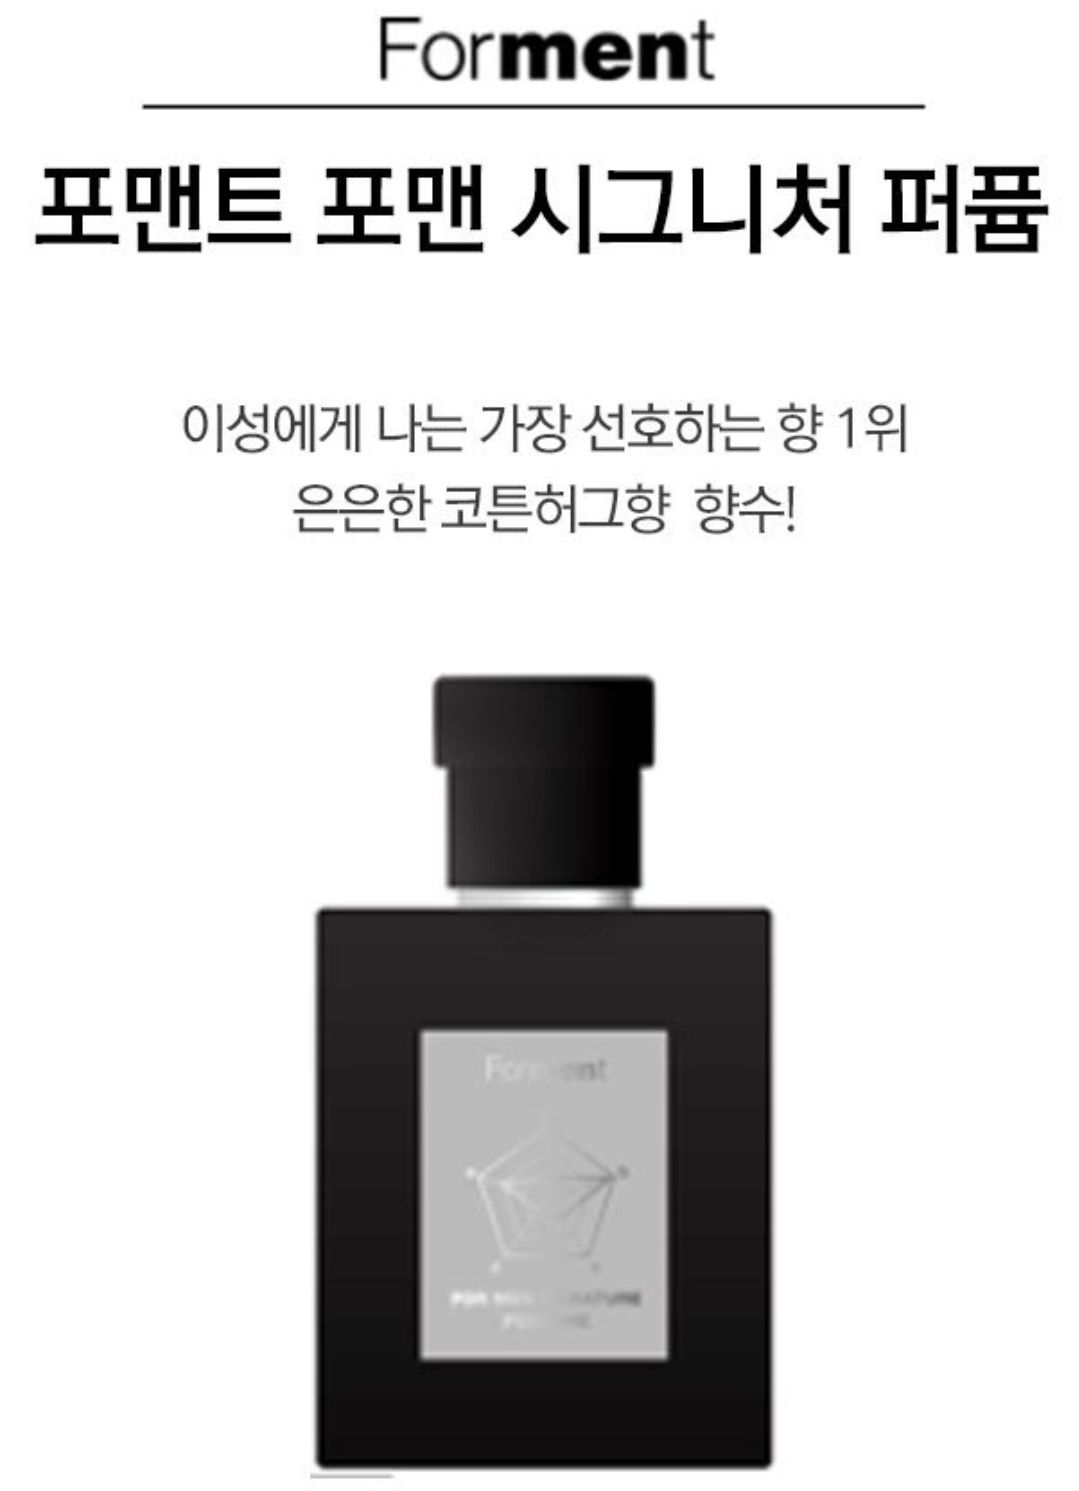 Parfum yang digunakan Jungkook BTS